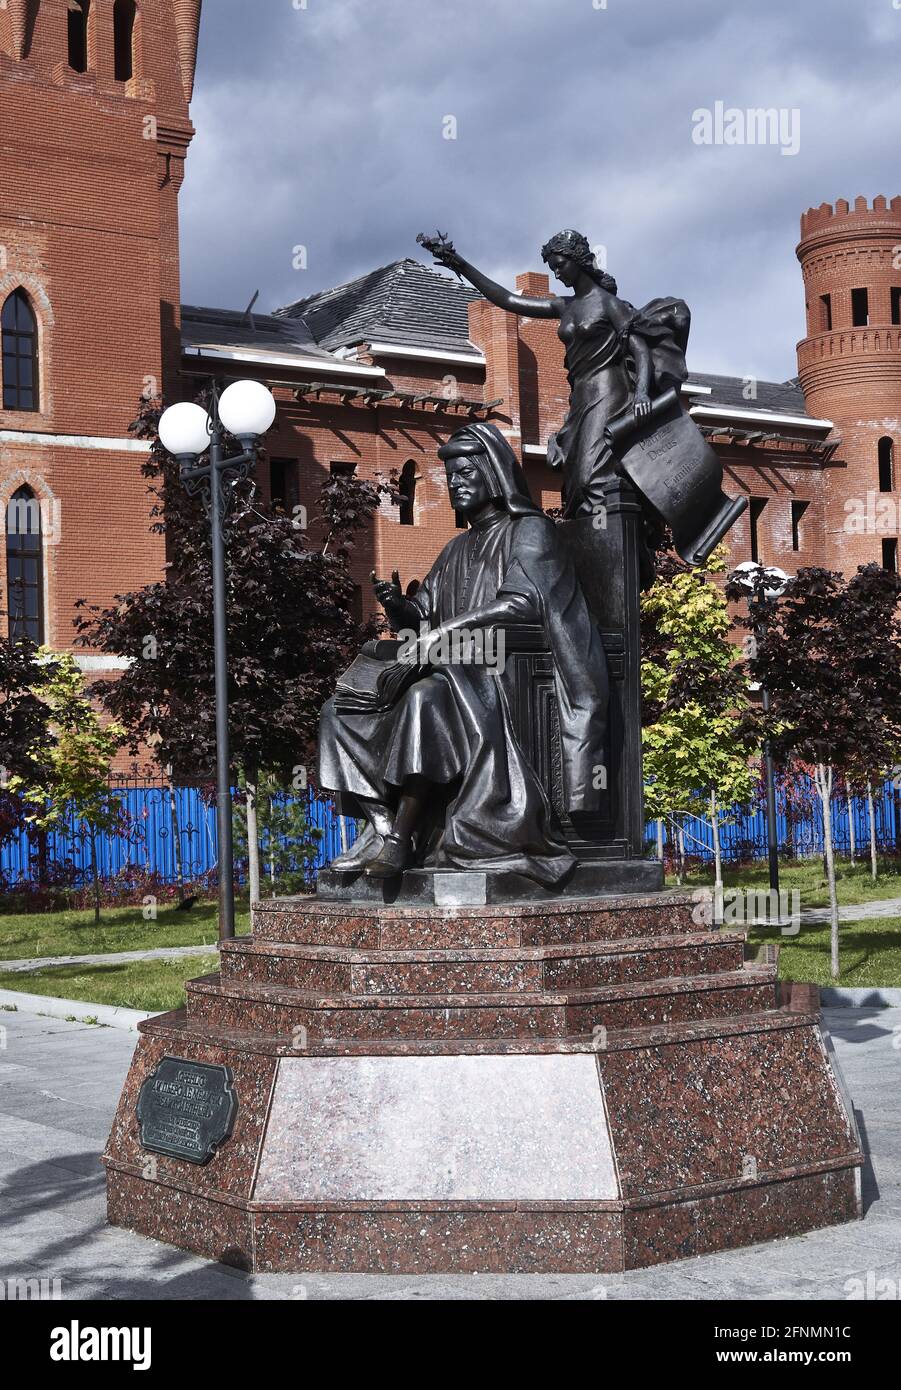 Russia; Europa; statua di bronzo nel giardino italiano del nuovo castello medievale di Yoshkar-Ola, la capitale della Repubblica di Mari El. La città è bes Foto Stock